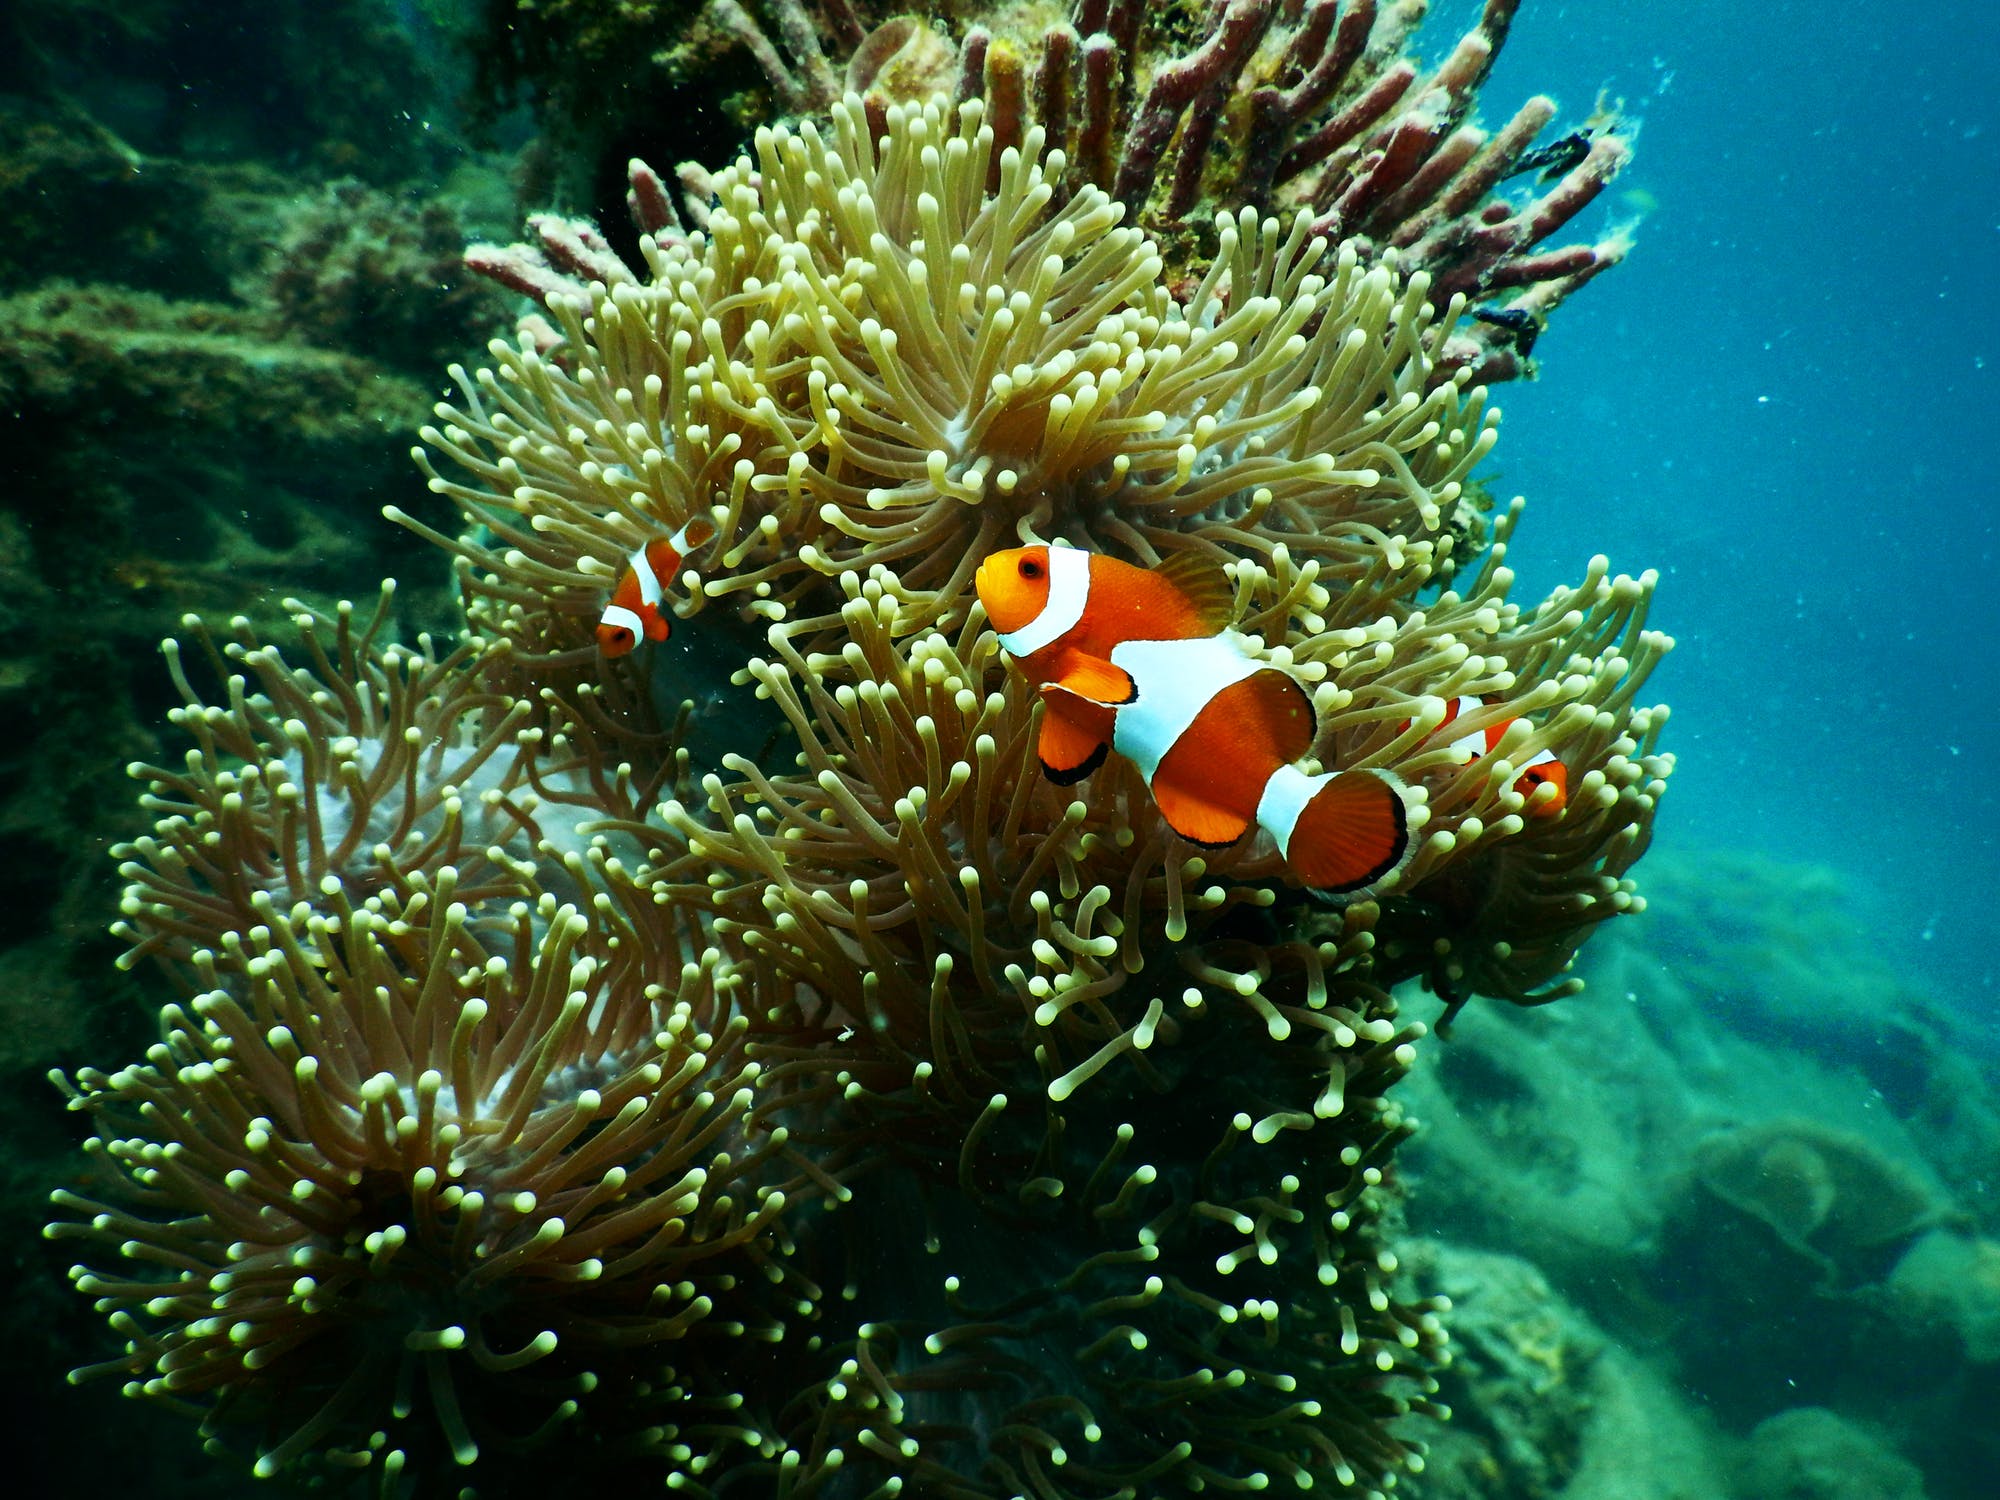 Nursery fish on coral